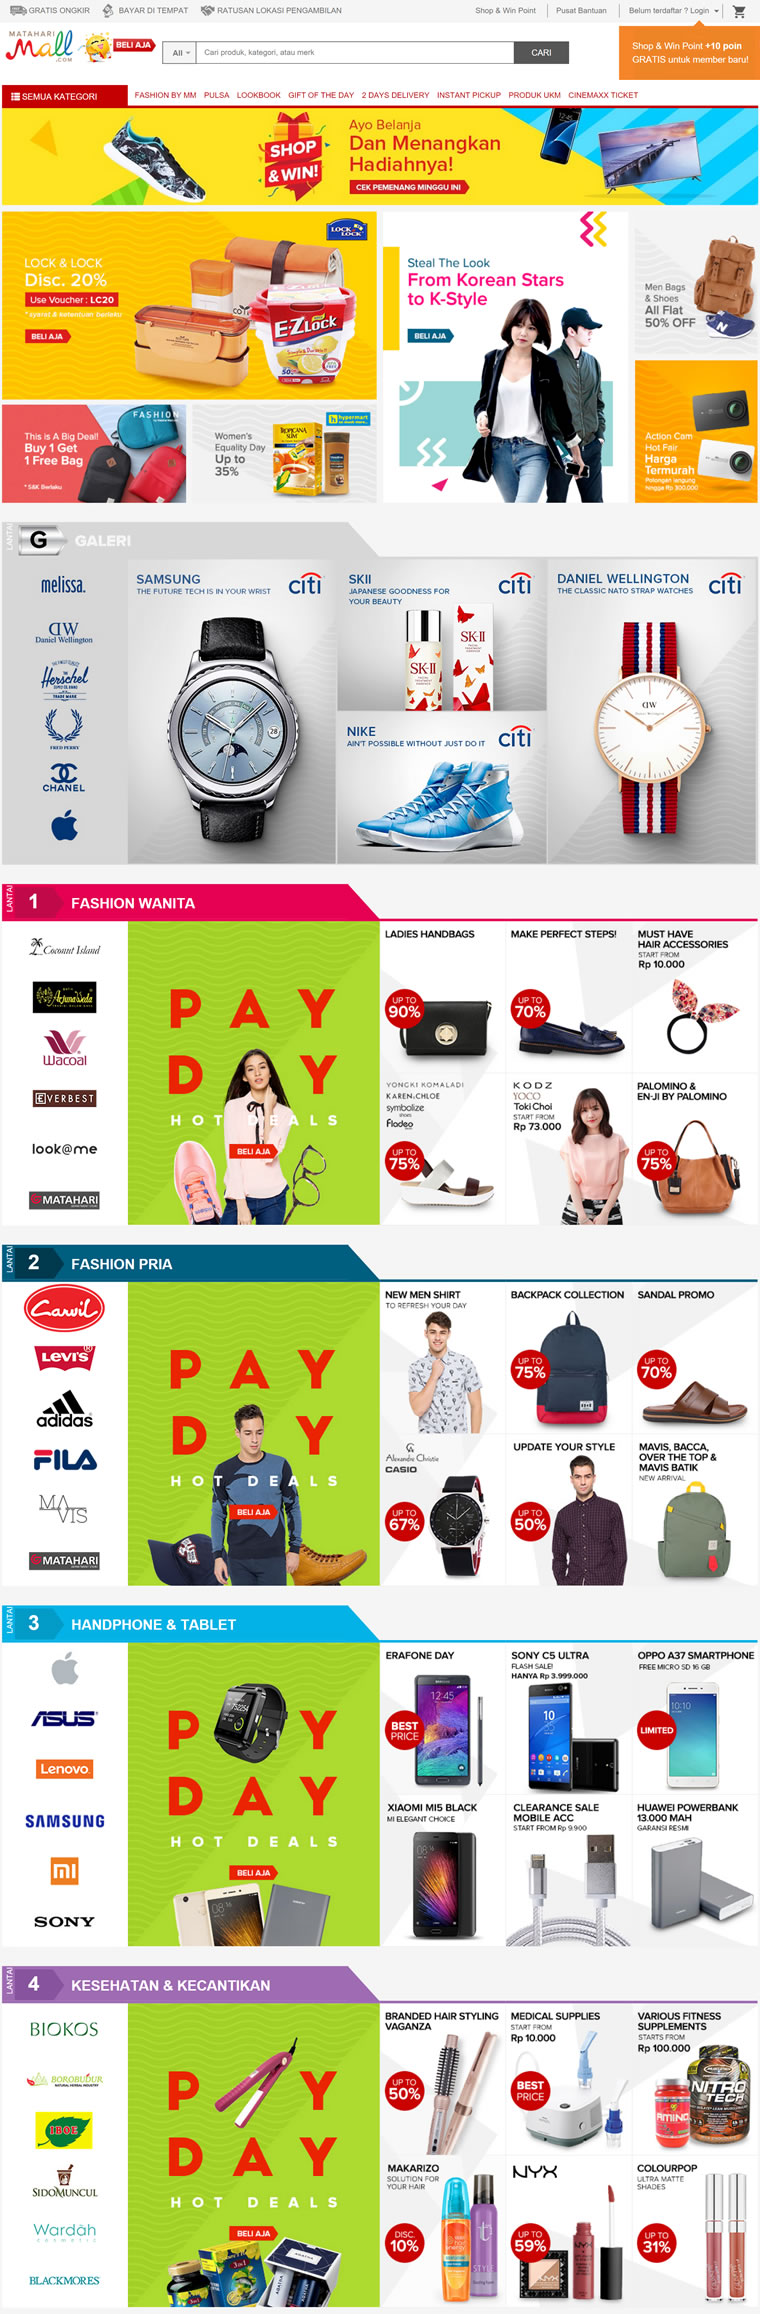 MatahariMall.com：印尼最大的在线购物网站